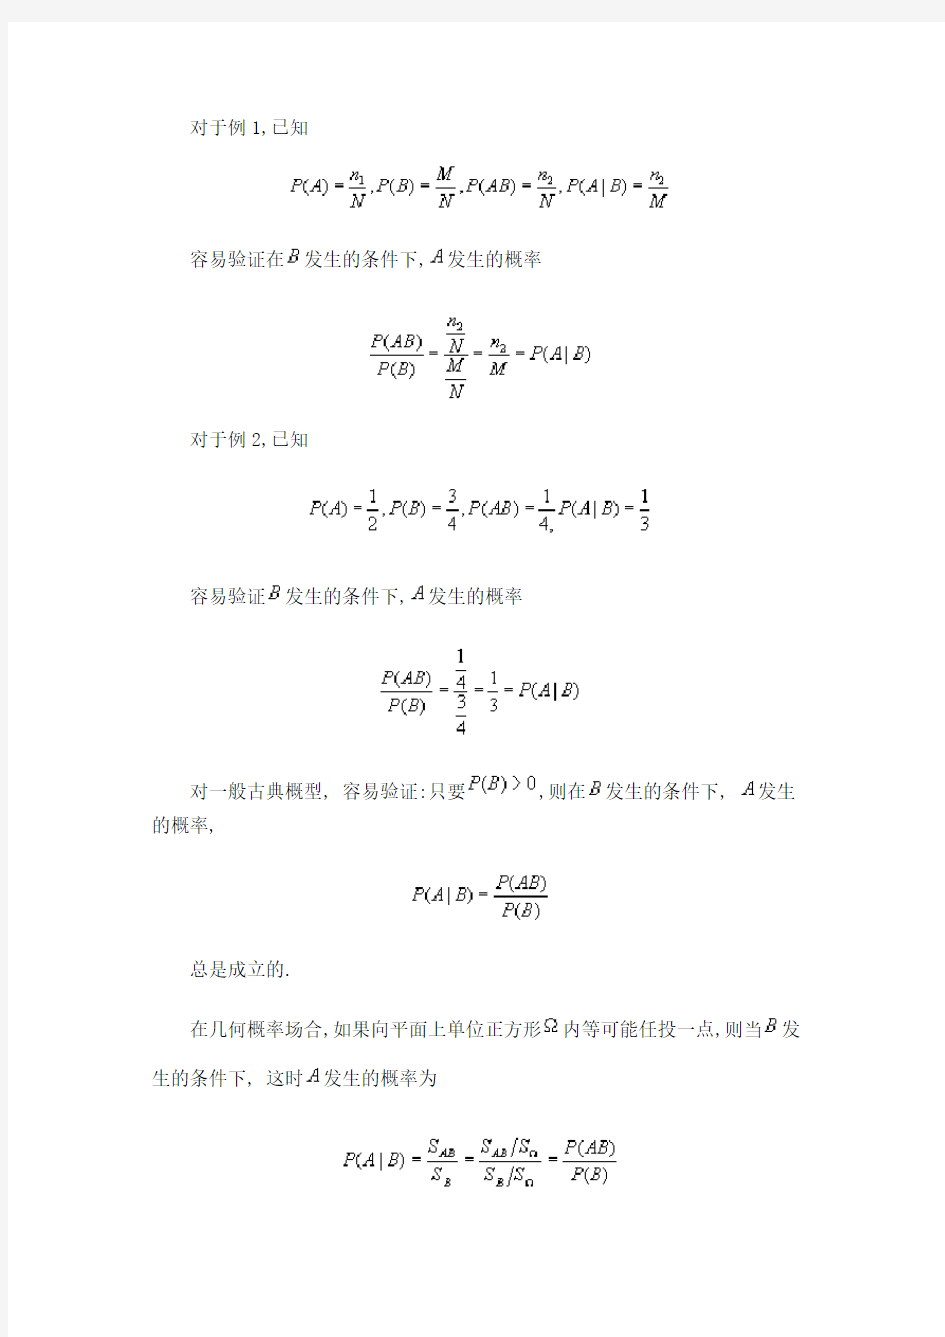 条件概率、全概率公式与贝叶斯公式